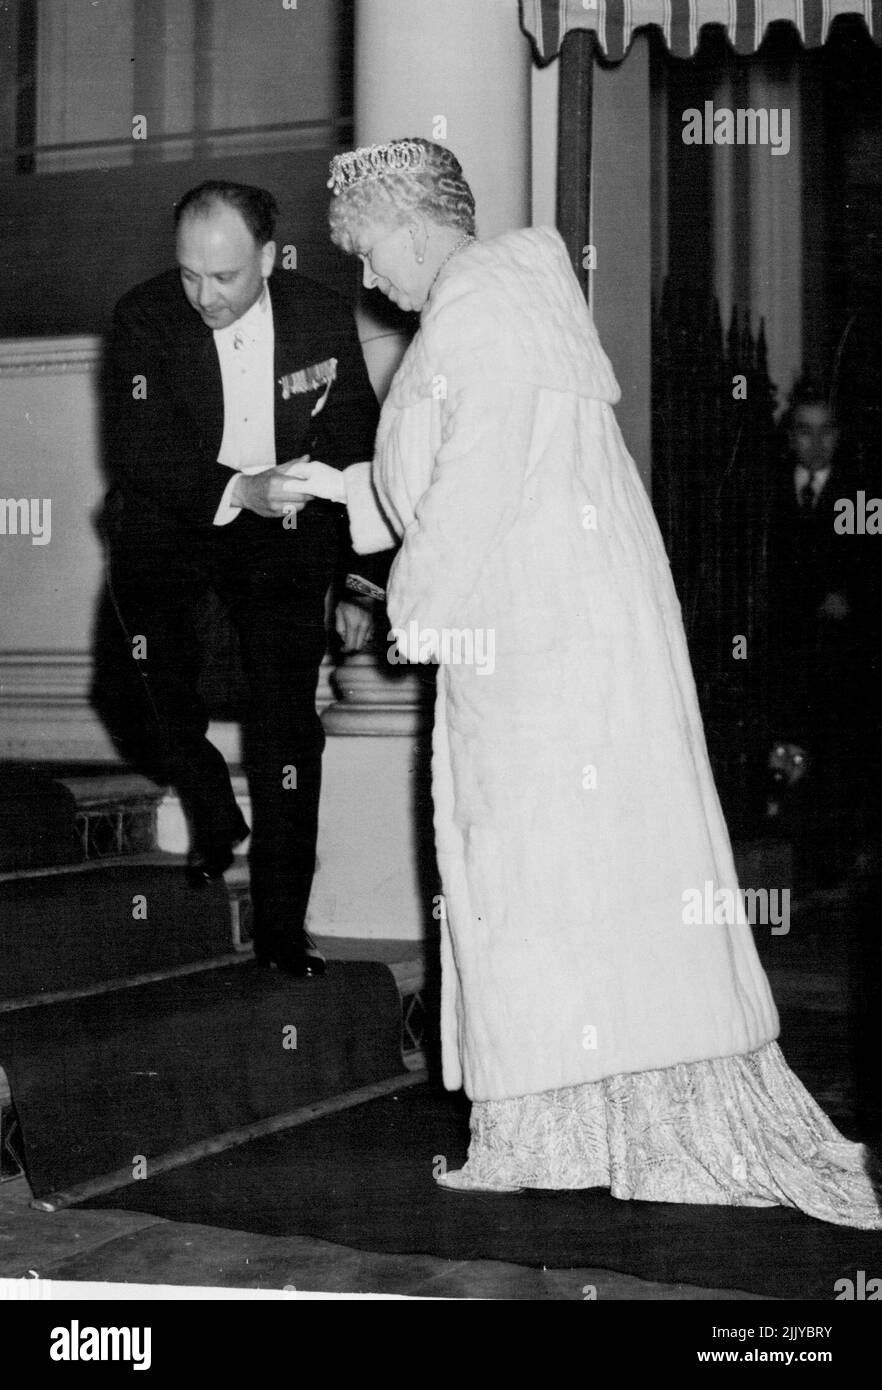 Re Carol atti come ospite alla Royalty britannica -- la regina Maria essendo assistita sulle scale al suo arrivo alla legazione di Roumanian per la cena il 16 novembre. Re Carol di Roumania fu l'ospite della Legazione Roumaniana di Londra il 16 novembre, gli ospiti tra cui il re e la regina, la regina Maria, altri membri della famiglia reale, e diede loro una cena di sei portate, organizzata da Mme. Grigorcea, moglie del Ministro Roumaniano di Londra. C'erano 57 ospiti in tutto, seduti ad un tavolo a ferro di cavallo. Novembre 17, 1938. (Foto di stampa associata). Foto Stock